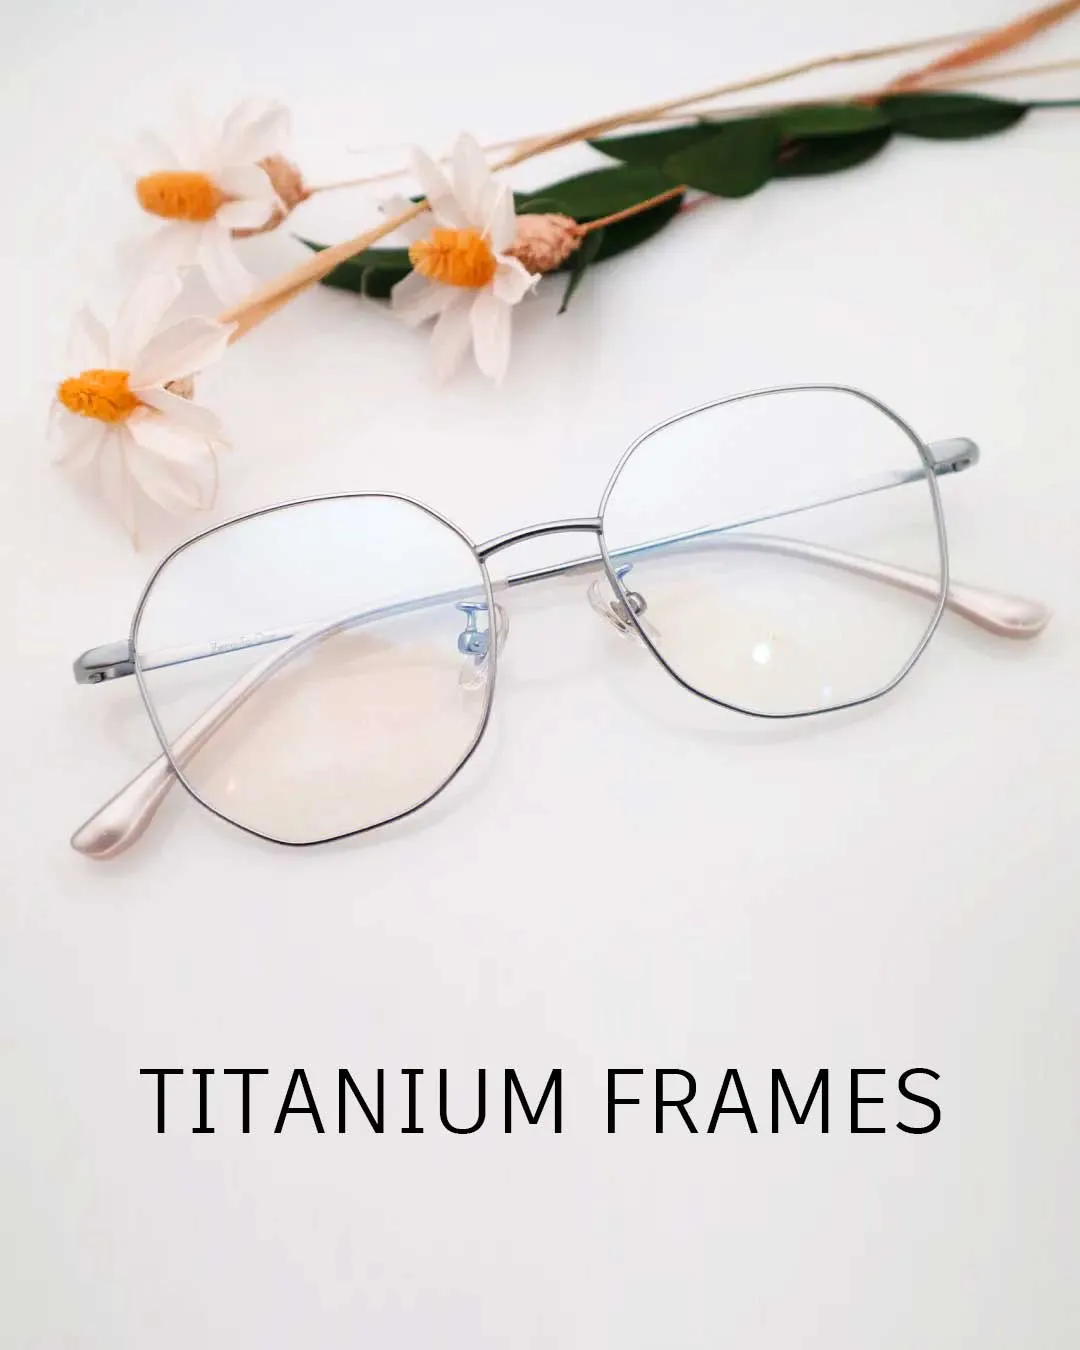 Optical frame made of titanium